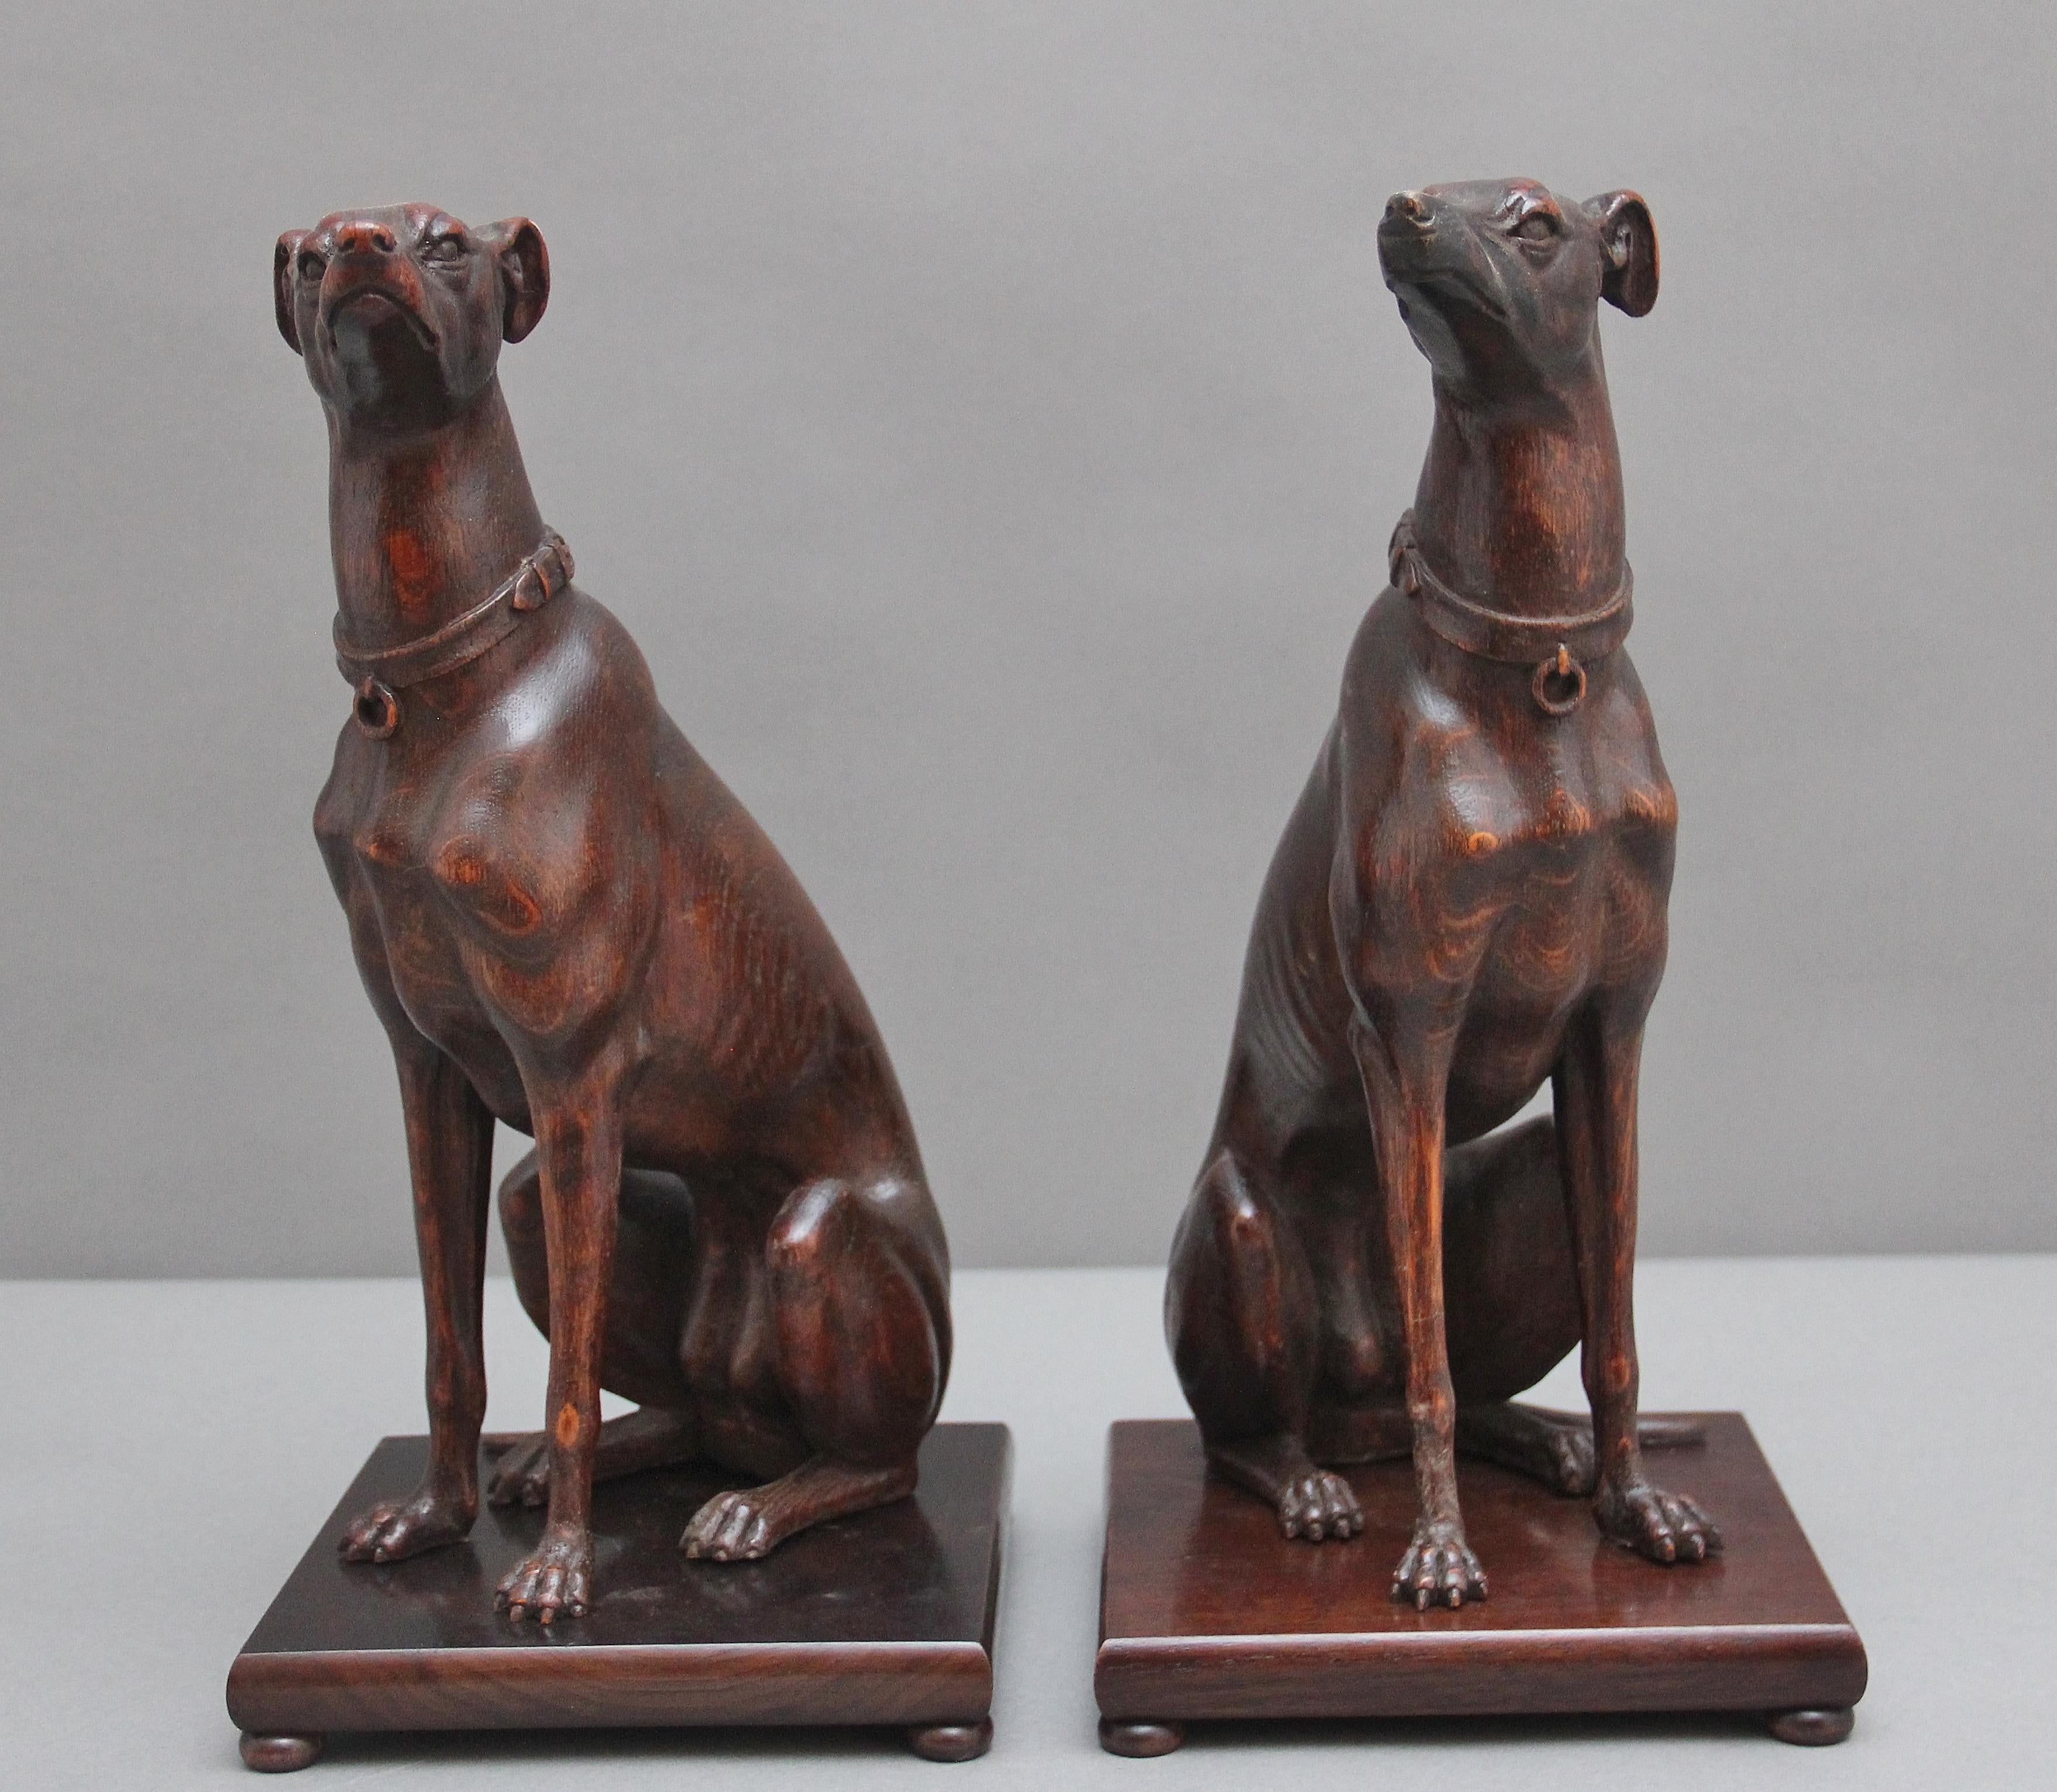 Ein Paar von hervorragender Qualität frühen 20. Jahrhundert geschnitzt Eiche Windhunde, beide Hunde sitzen auf einem quadratischen Sockel auf Bun Füße erhöht, sehr gut geschnitzt und die Liebe zum Detail ist fabelhaft.  Ca. 1920.